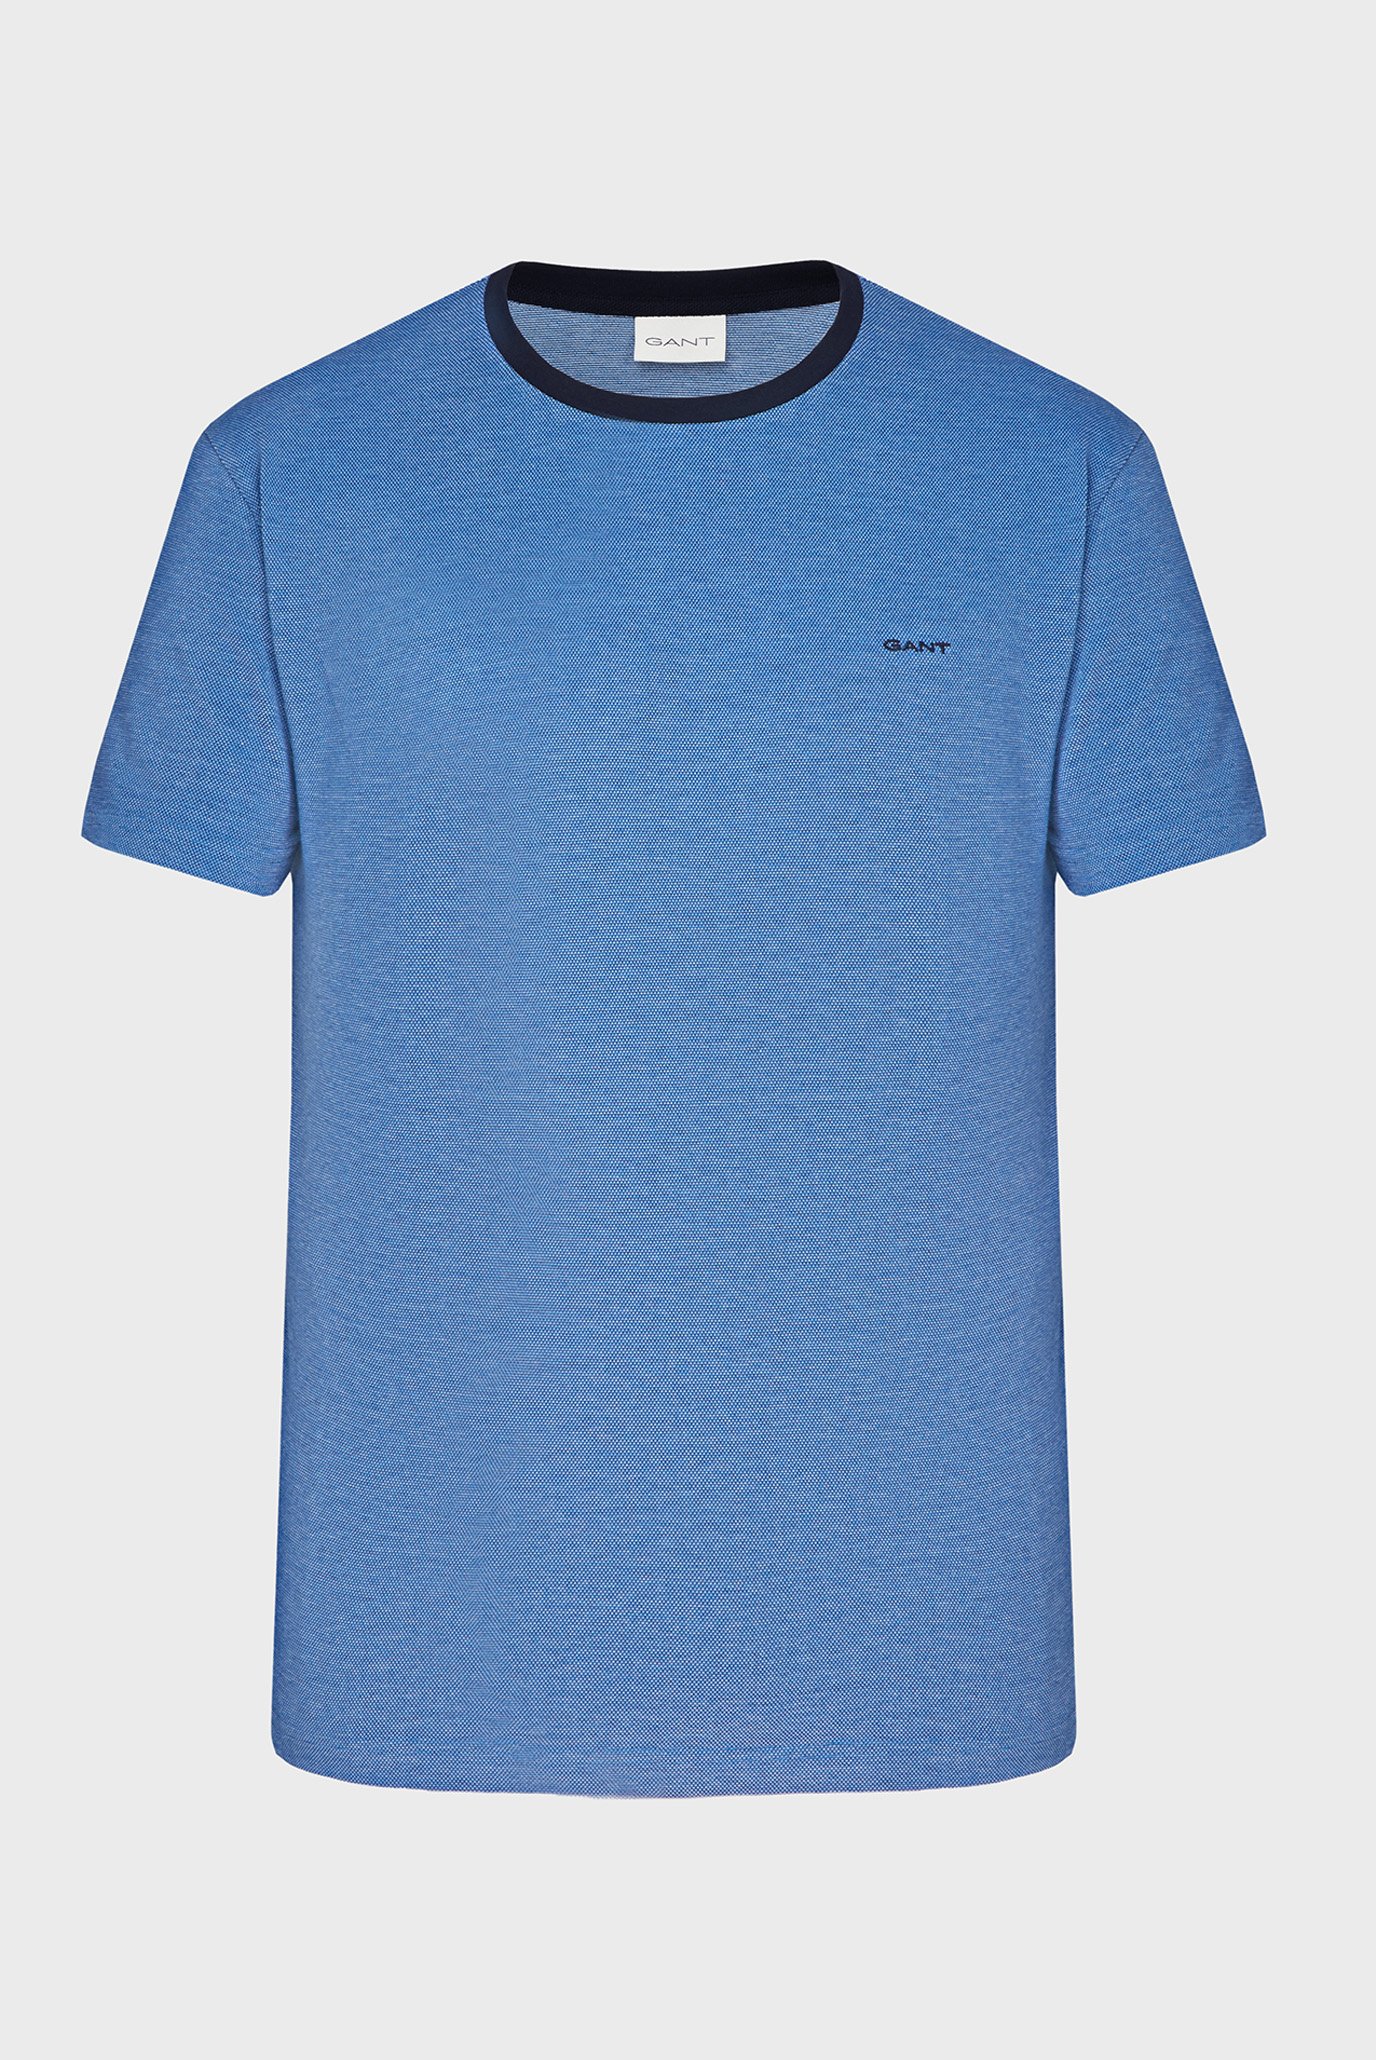 Чоловіча синя футболка 4-COL OXFORD 1